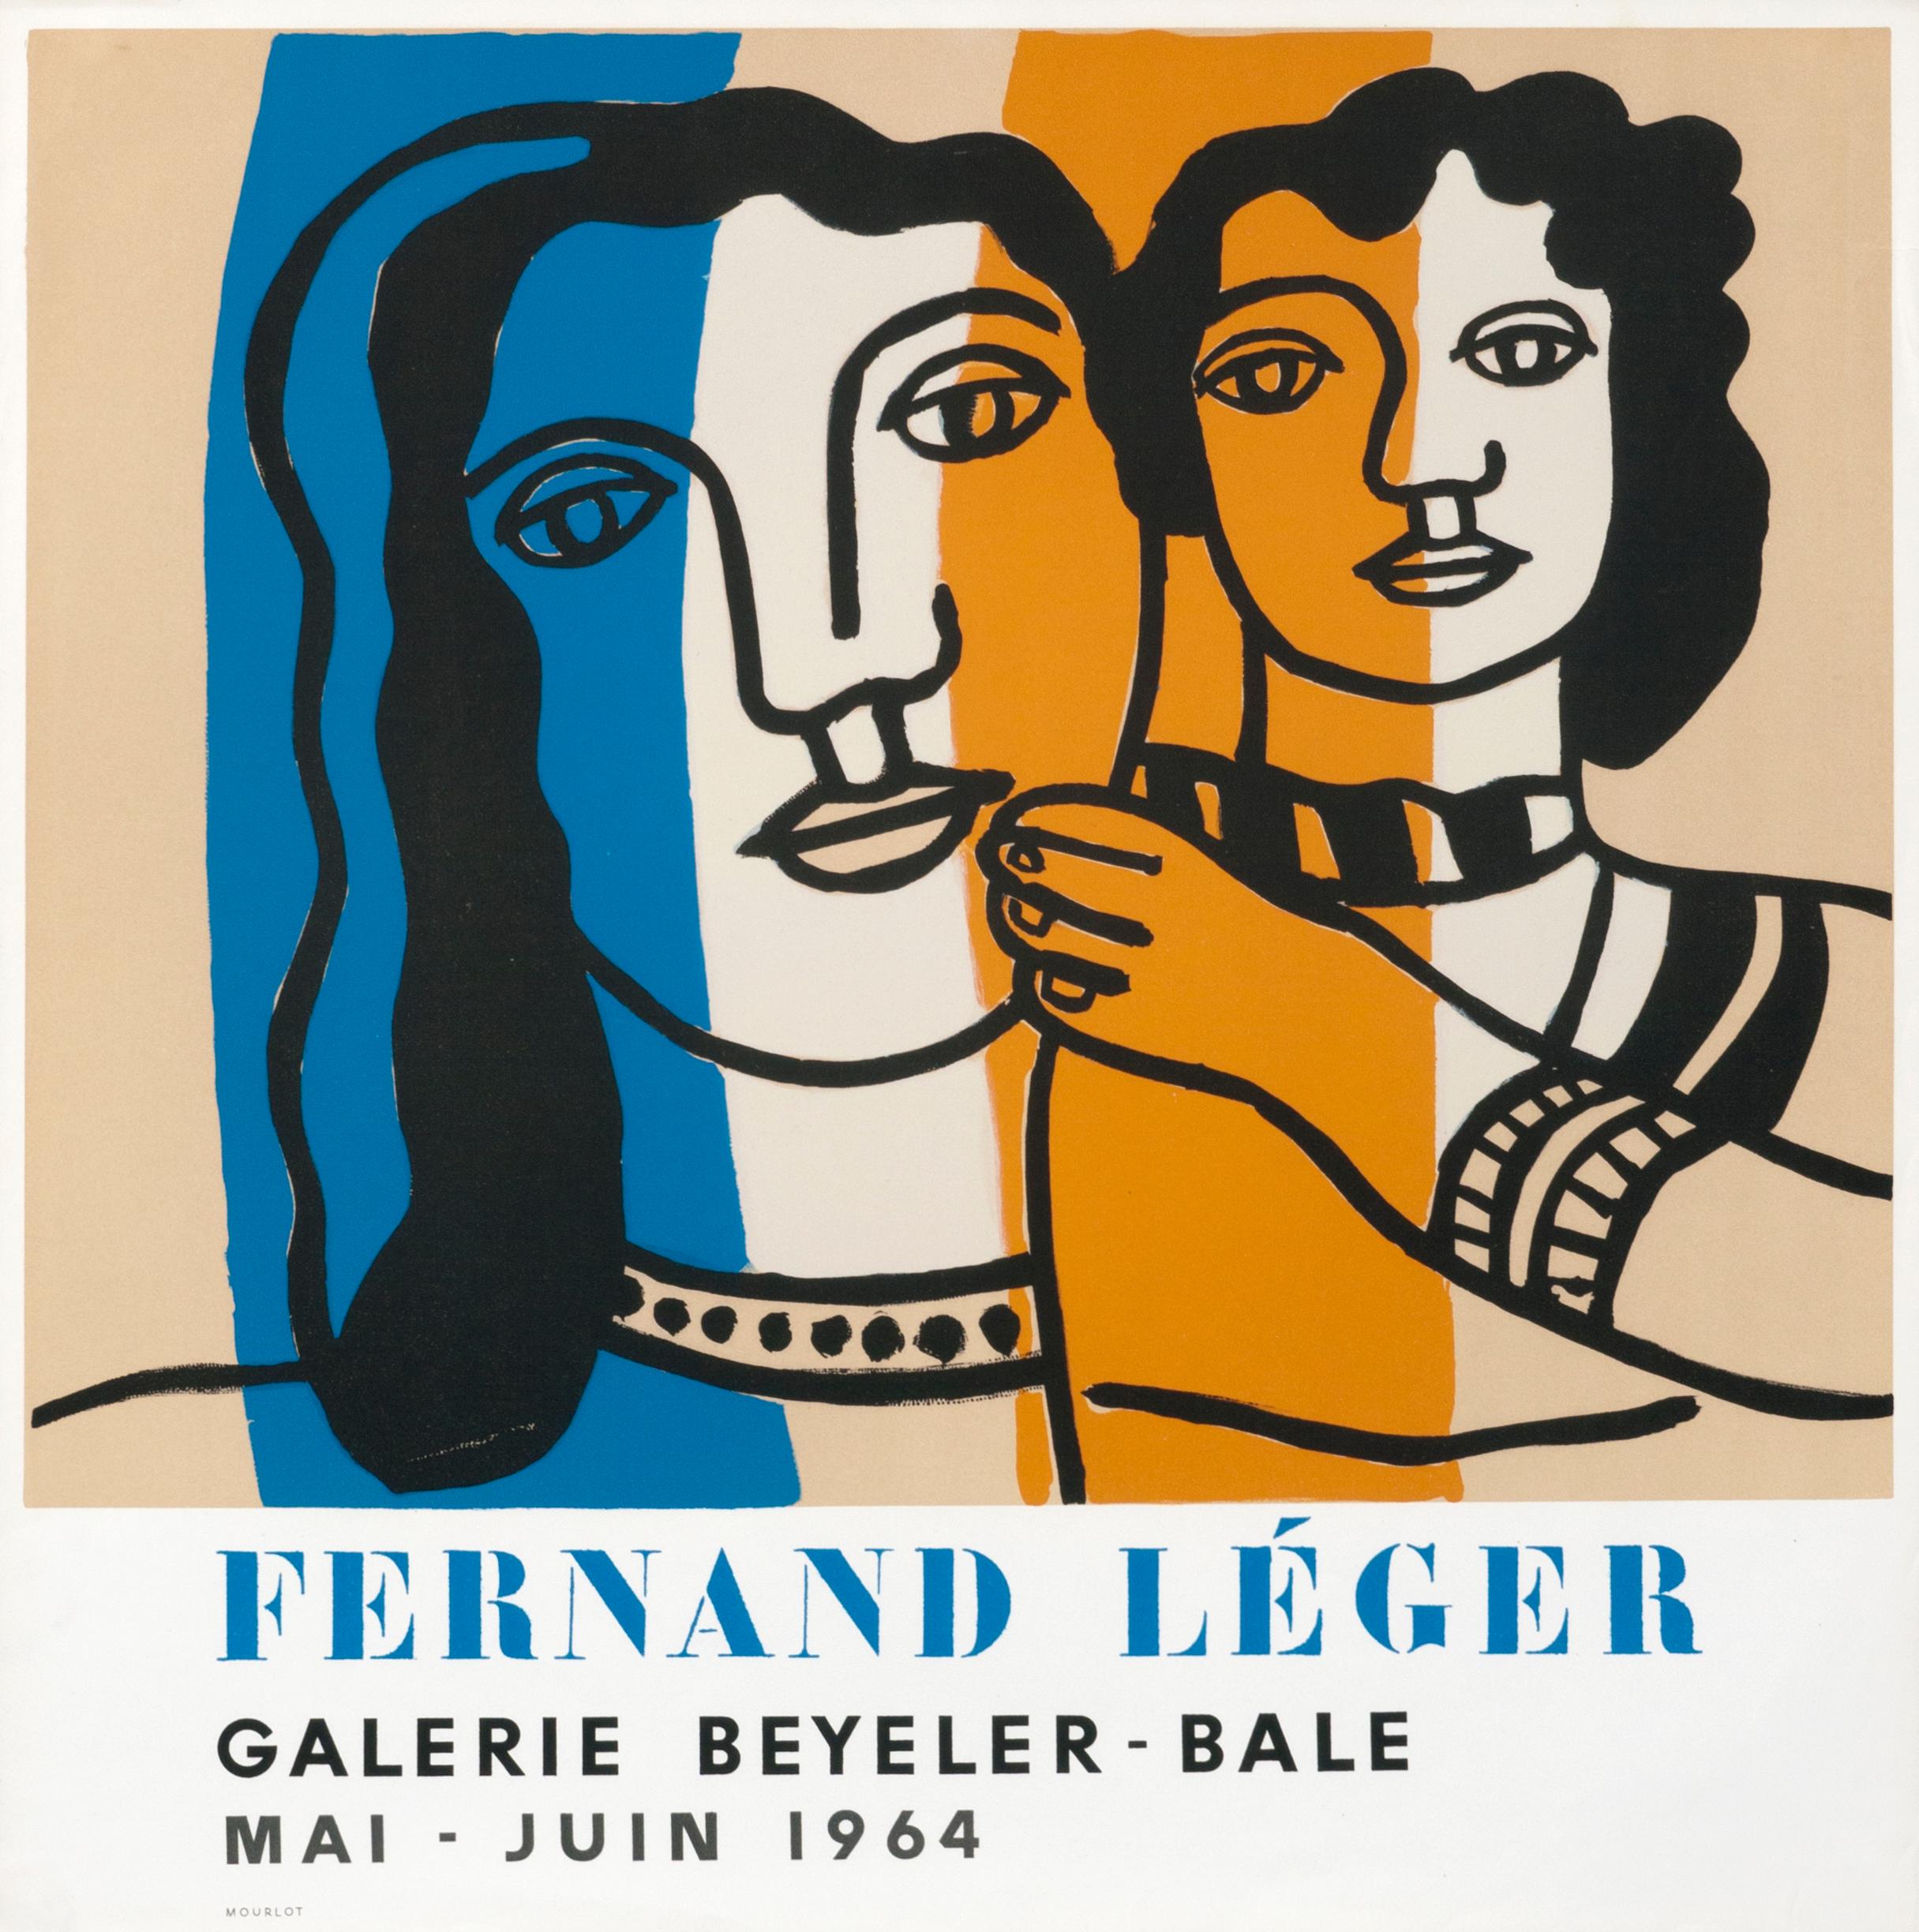 (after) Fernand Léger Figurative Print - "Fernand Leger - Galerie Beyeler - Bale" Exhibition Original Vintage Poster